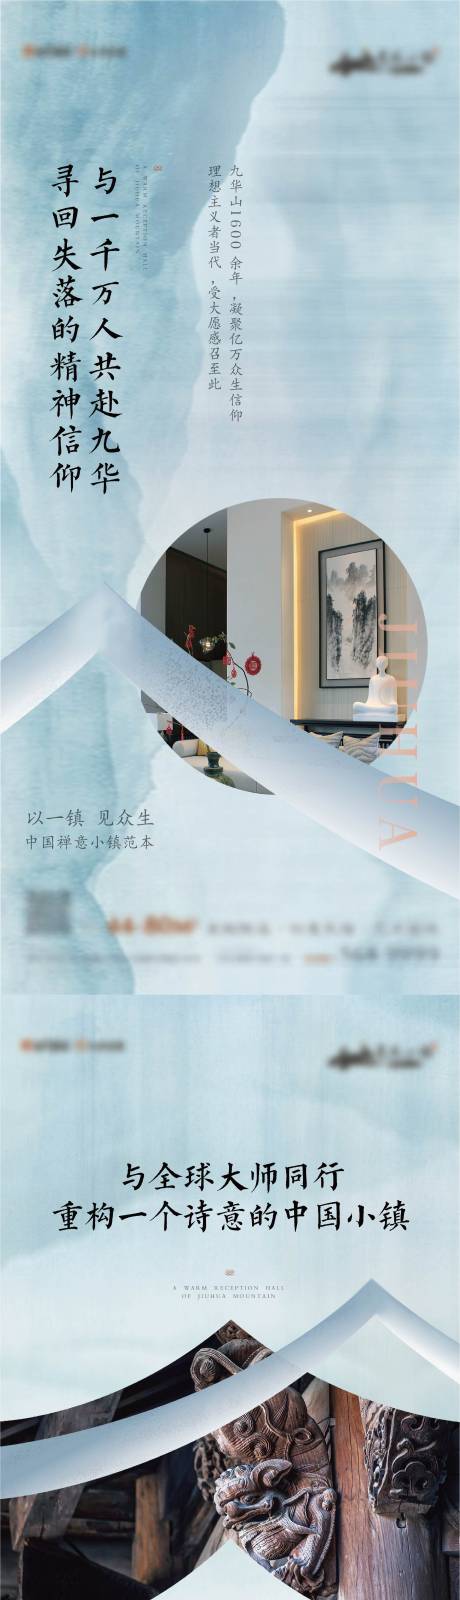 中式禅意系列刷屏海报